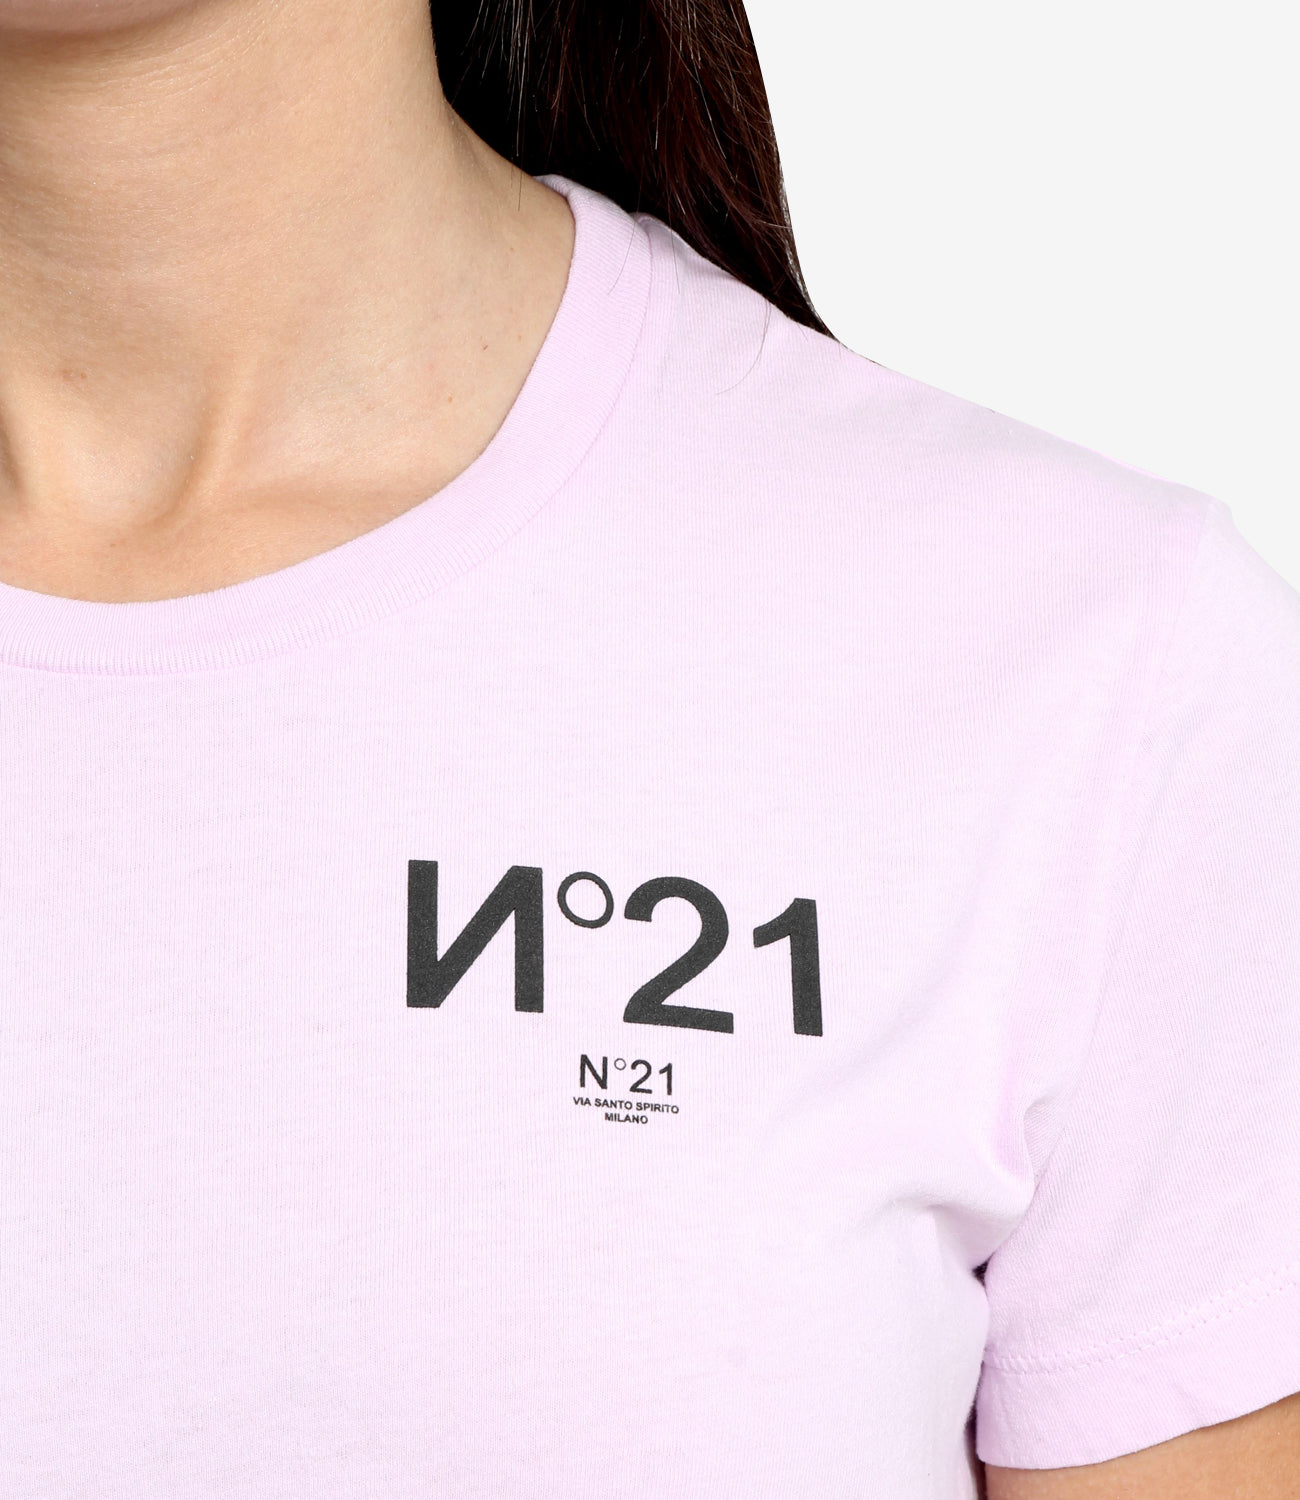 N 21 | Pink T-Shirt